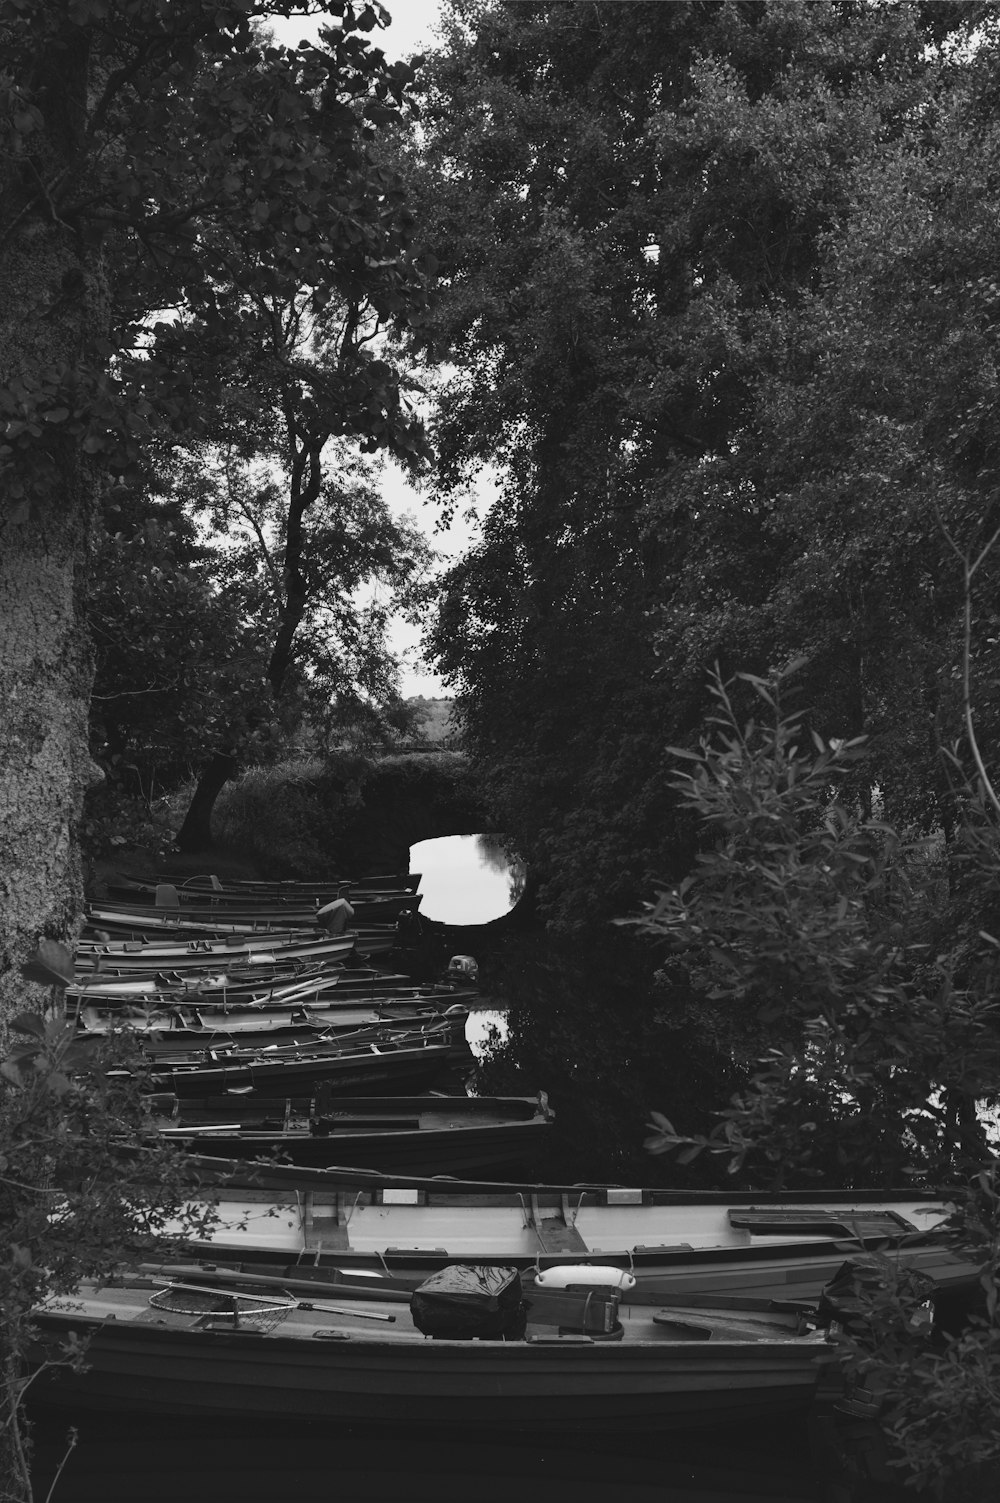 Une photo en noir et blanc d’une rangée de bateaux